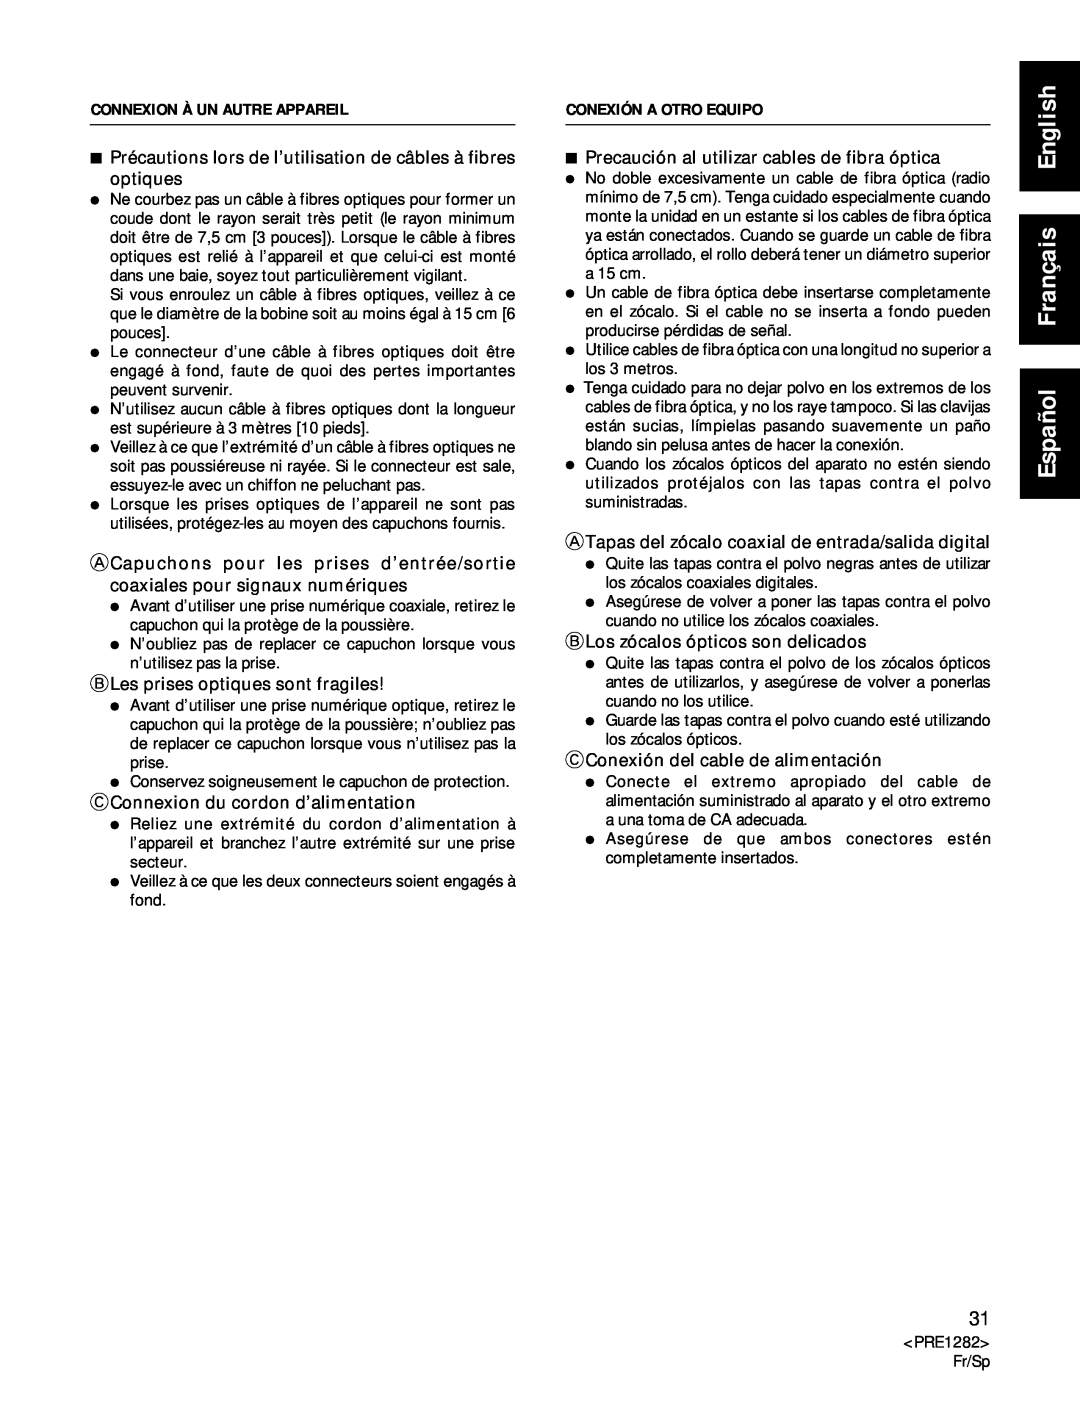 Americana Appliances CDR-850 manual Español Français English, BLes prises optiques sont fragiles 